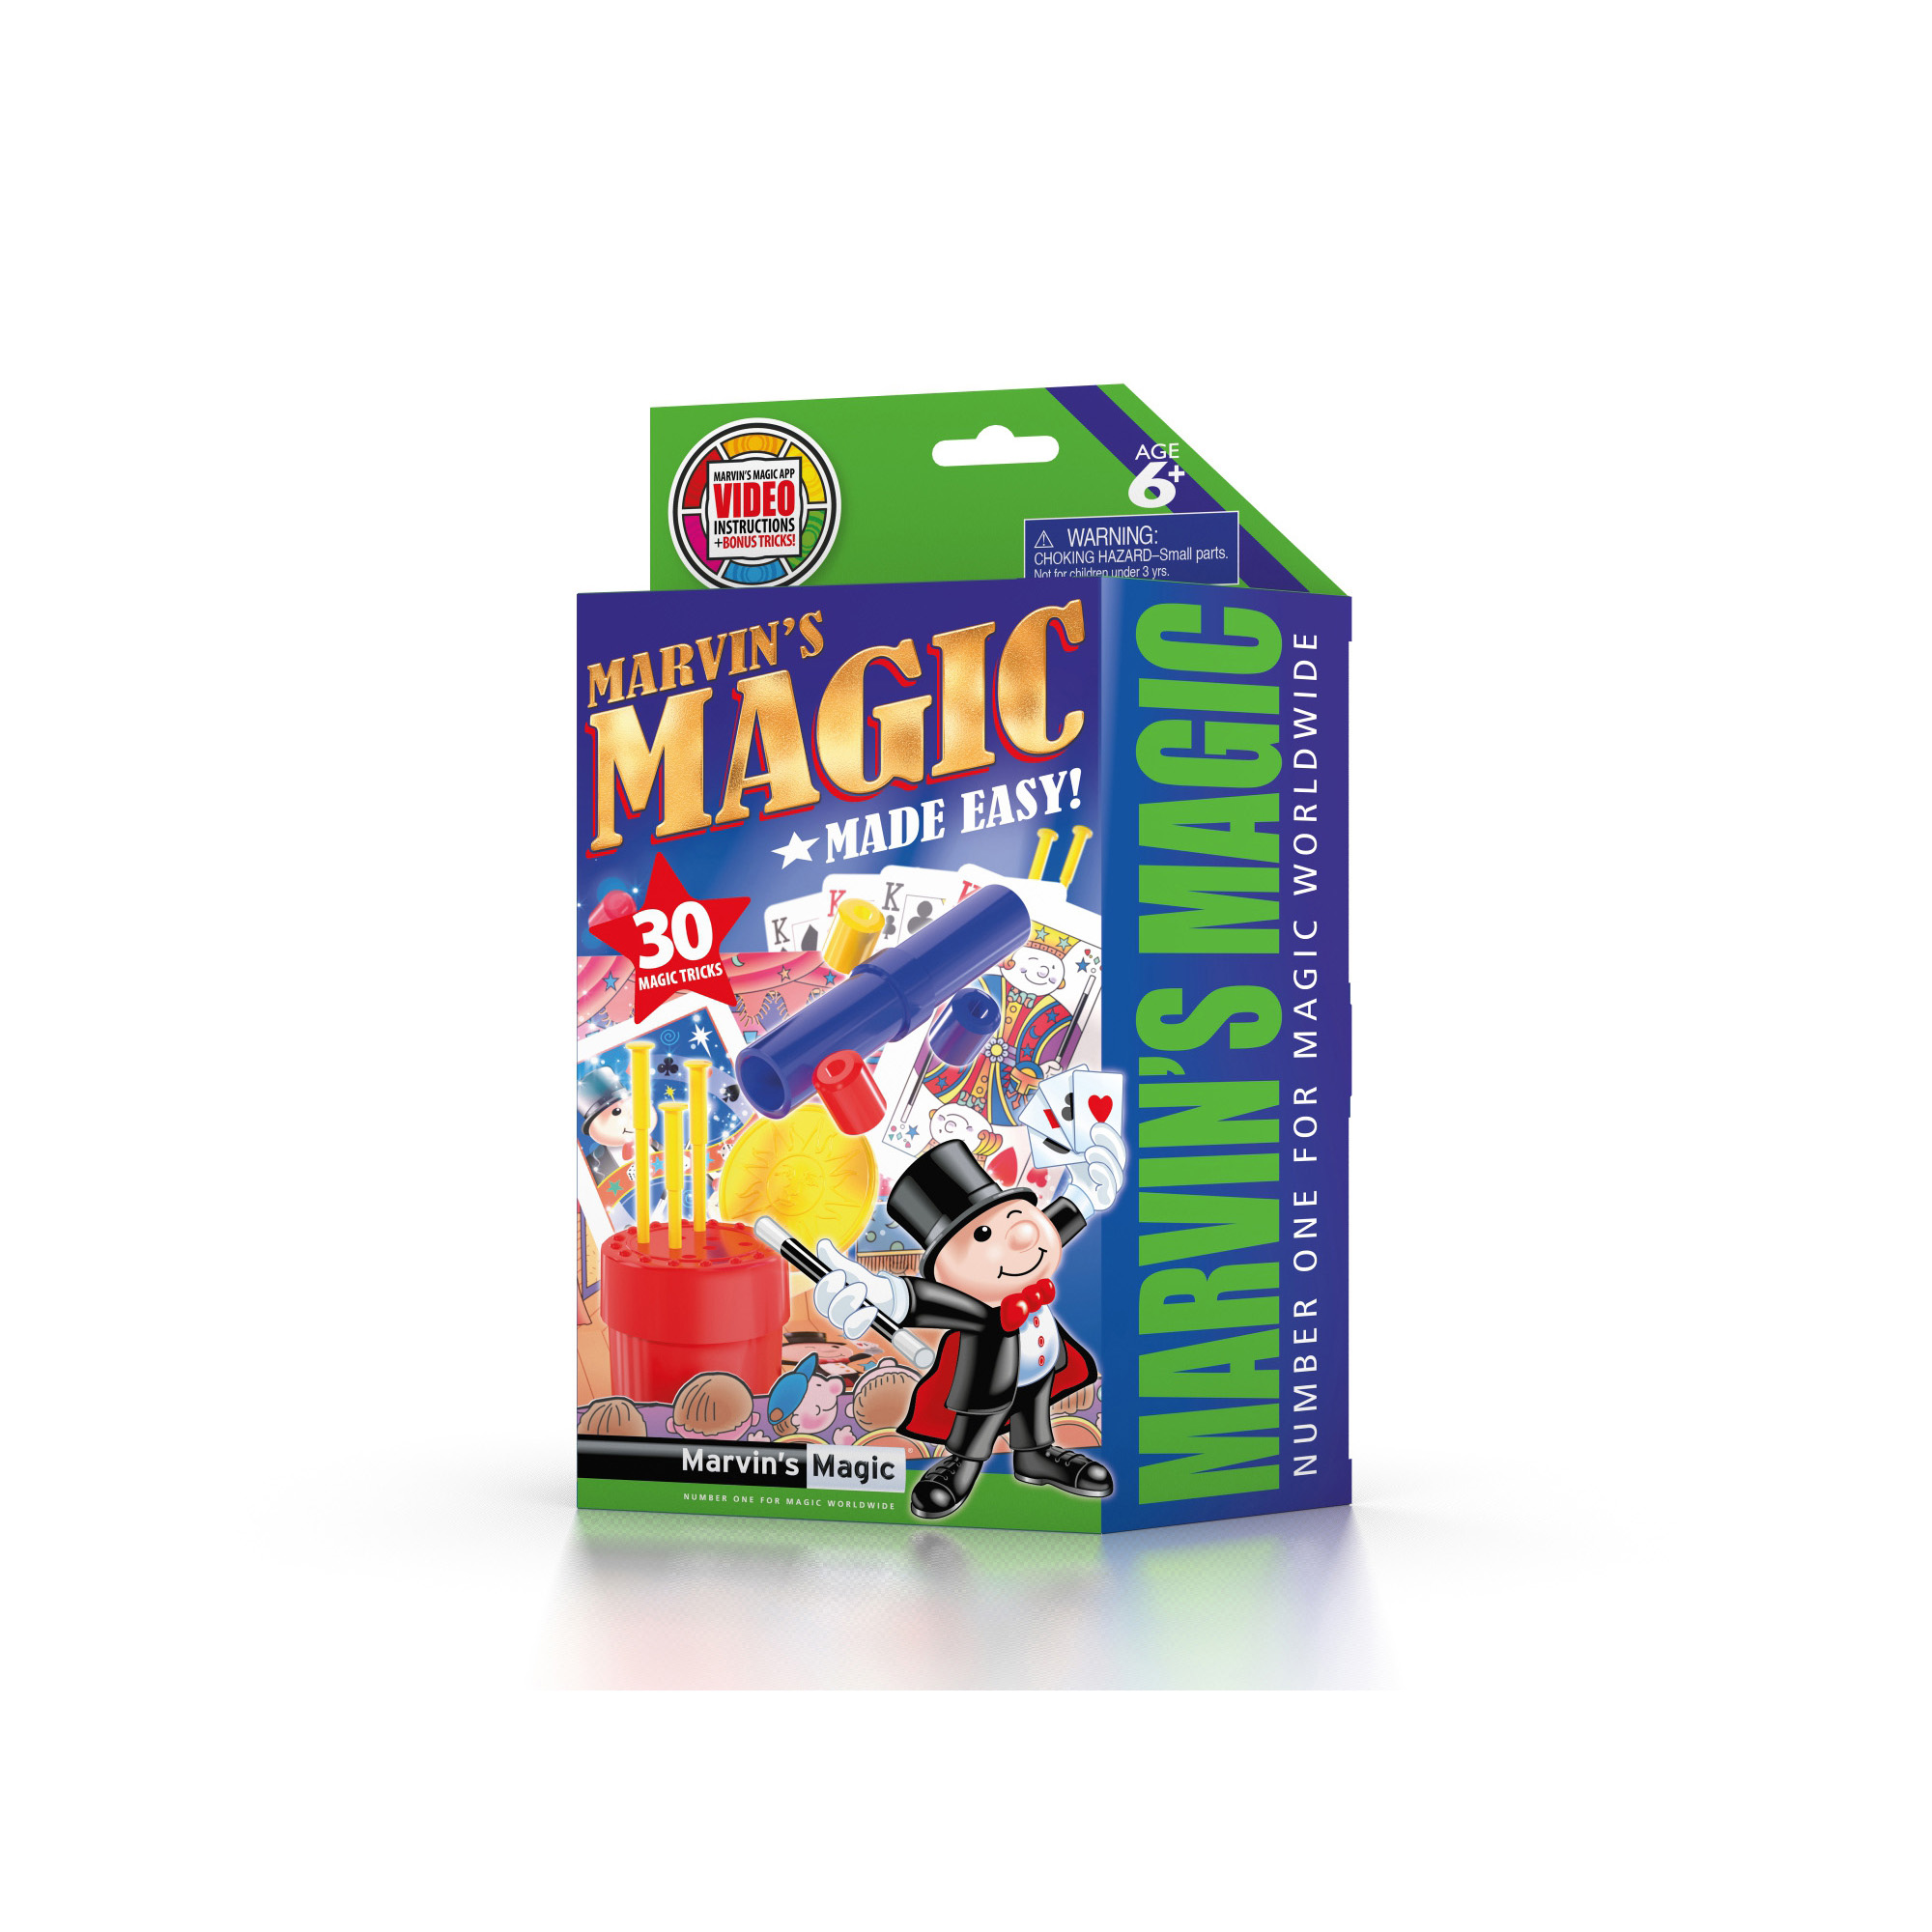 Marvin's amazing magic 30 tricks 2 - Marvin's Magic